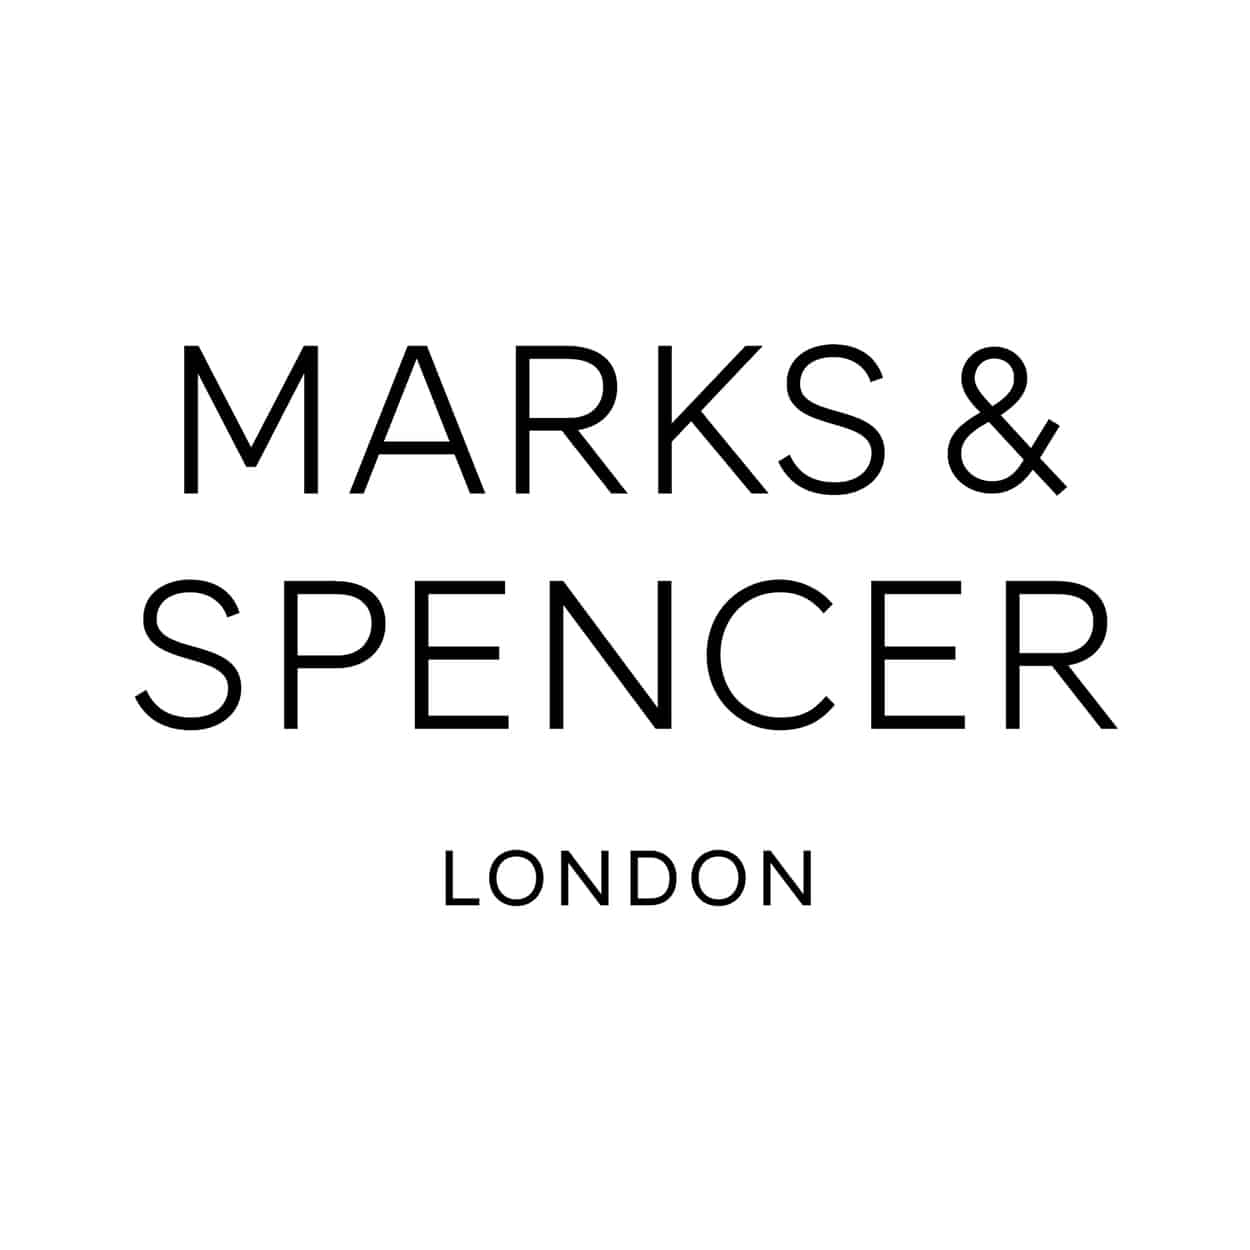 Marks & Spencer e vouchers singapore